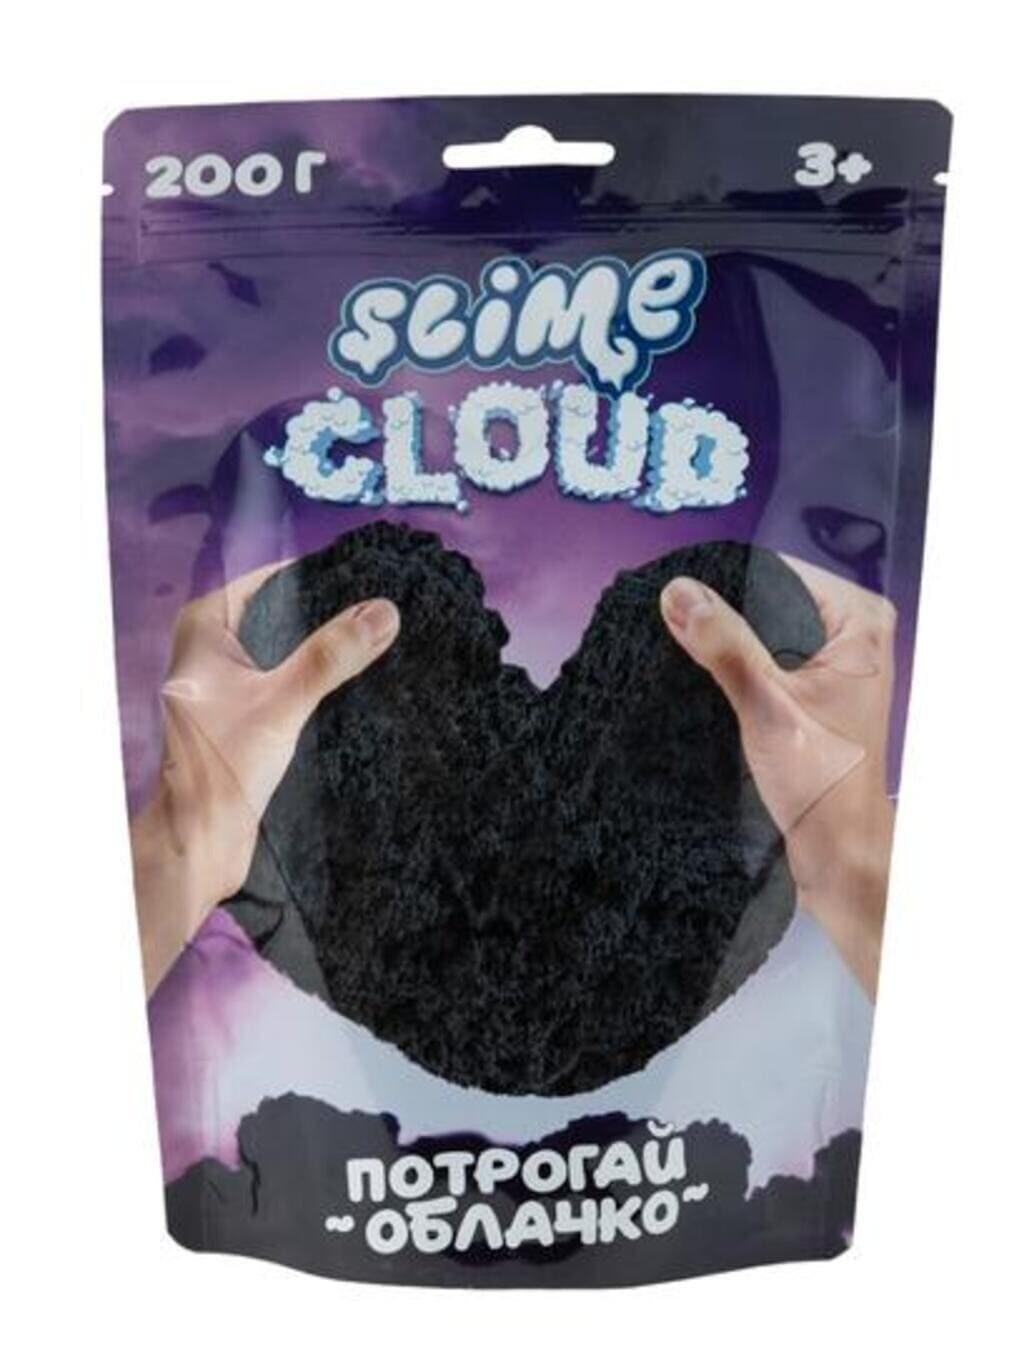 Cloud-slime Торнадо с ароматом личи, 200 г